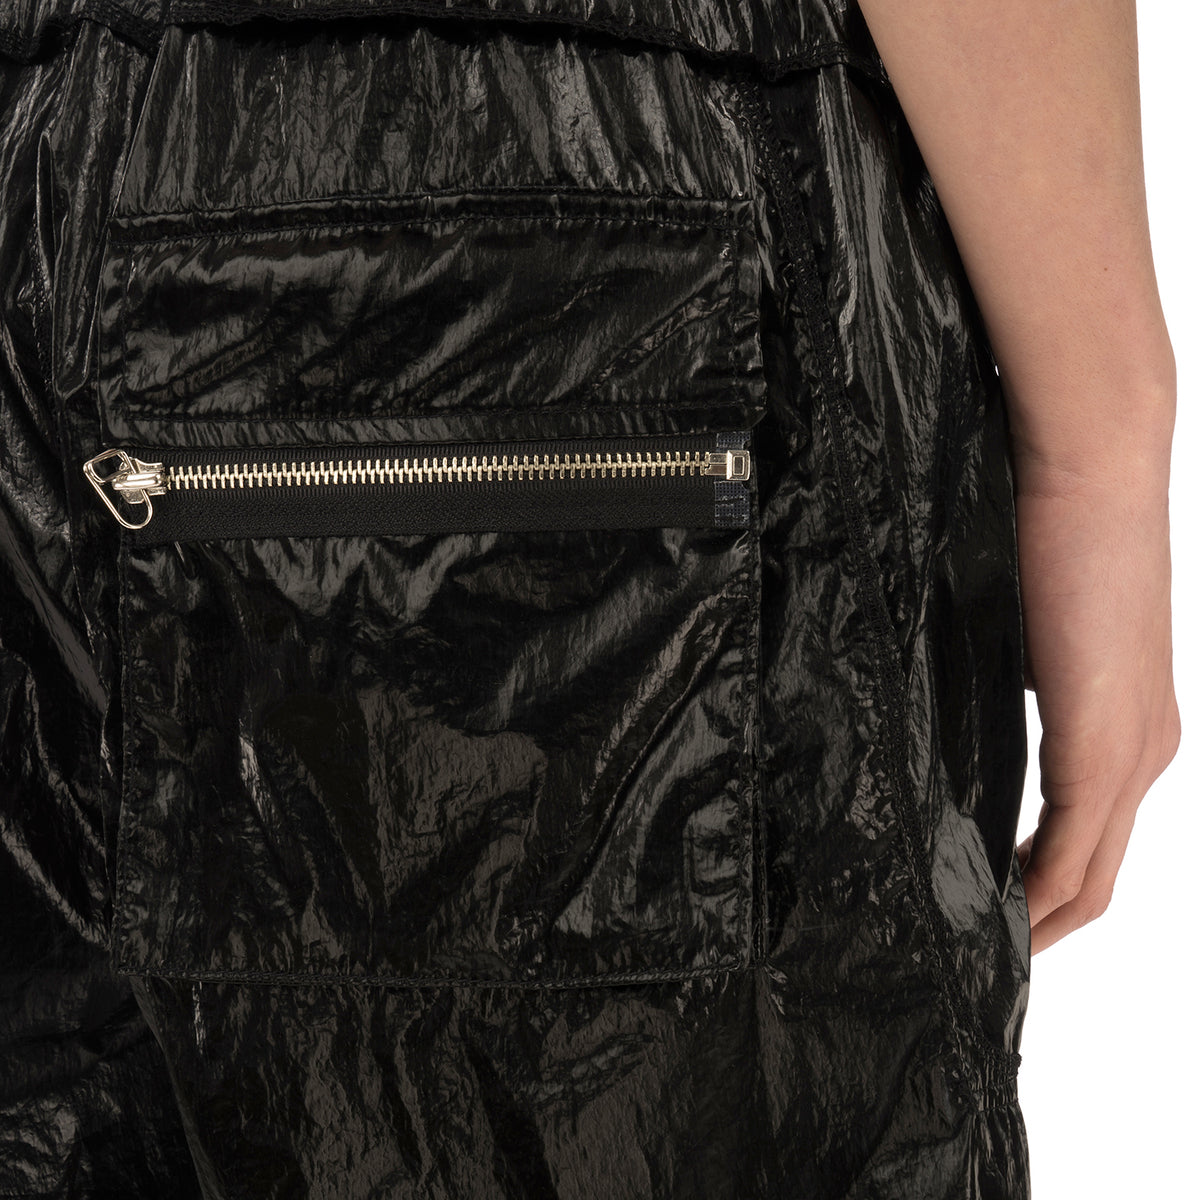 asparagus_ | Inside Out Foil Shorts Black - Concrete